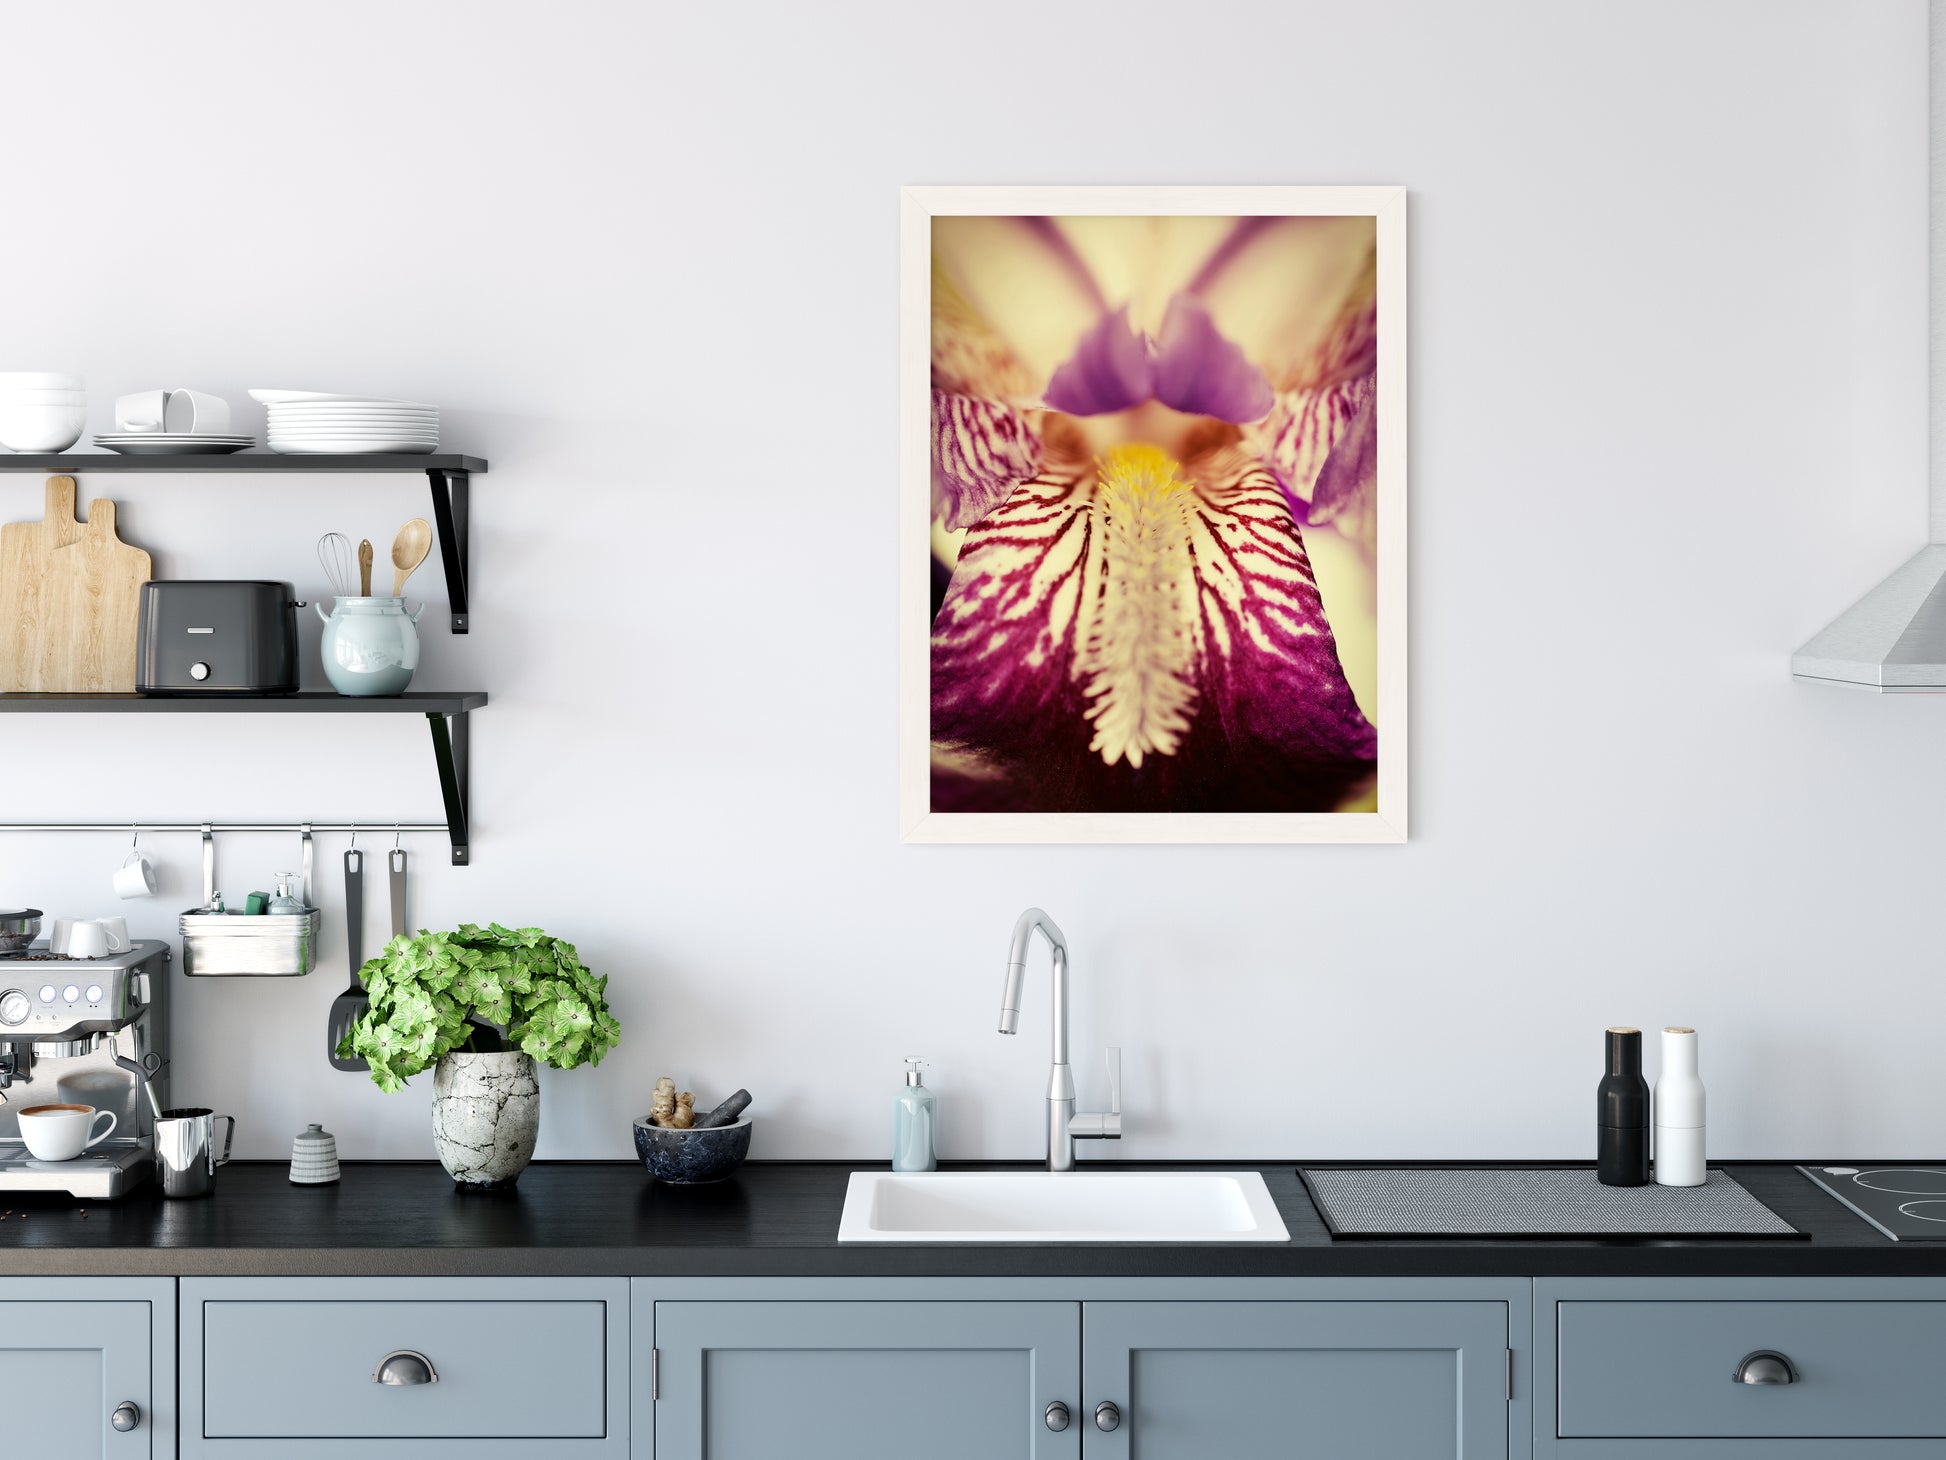 Modern Kitchen Framed Art: Antiqued Iris Floral / Flora / Botanical / Nature Photo Framed Wall Art Print - Artwork - Modern Wall Decor